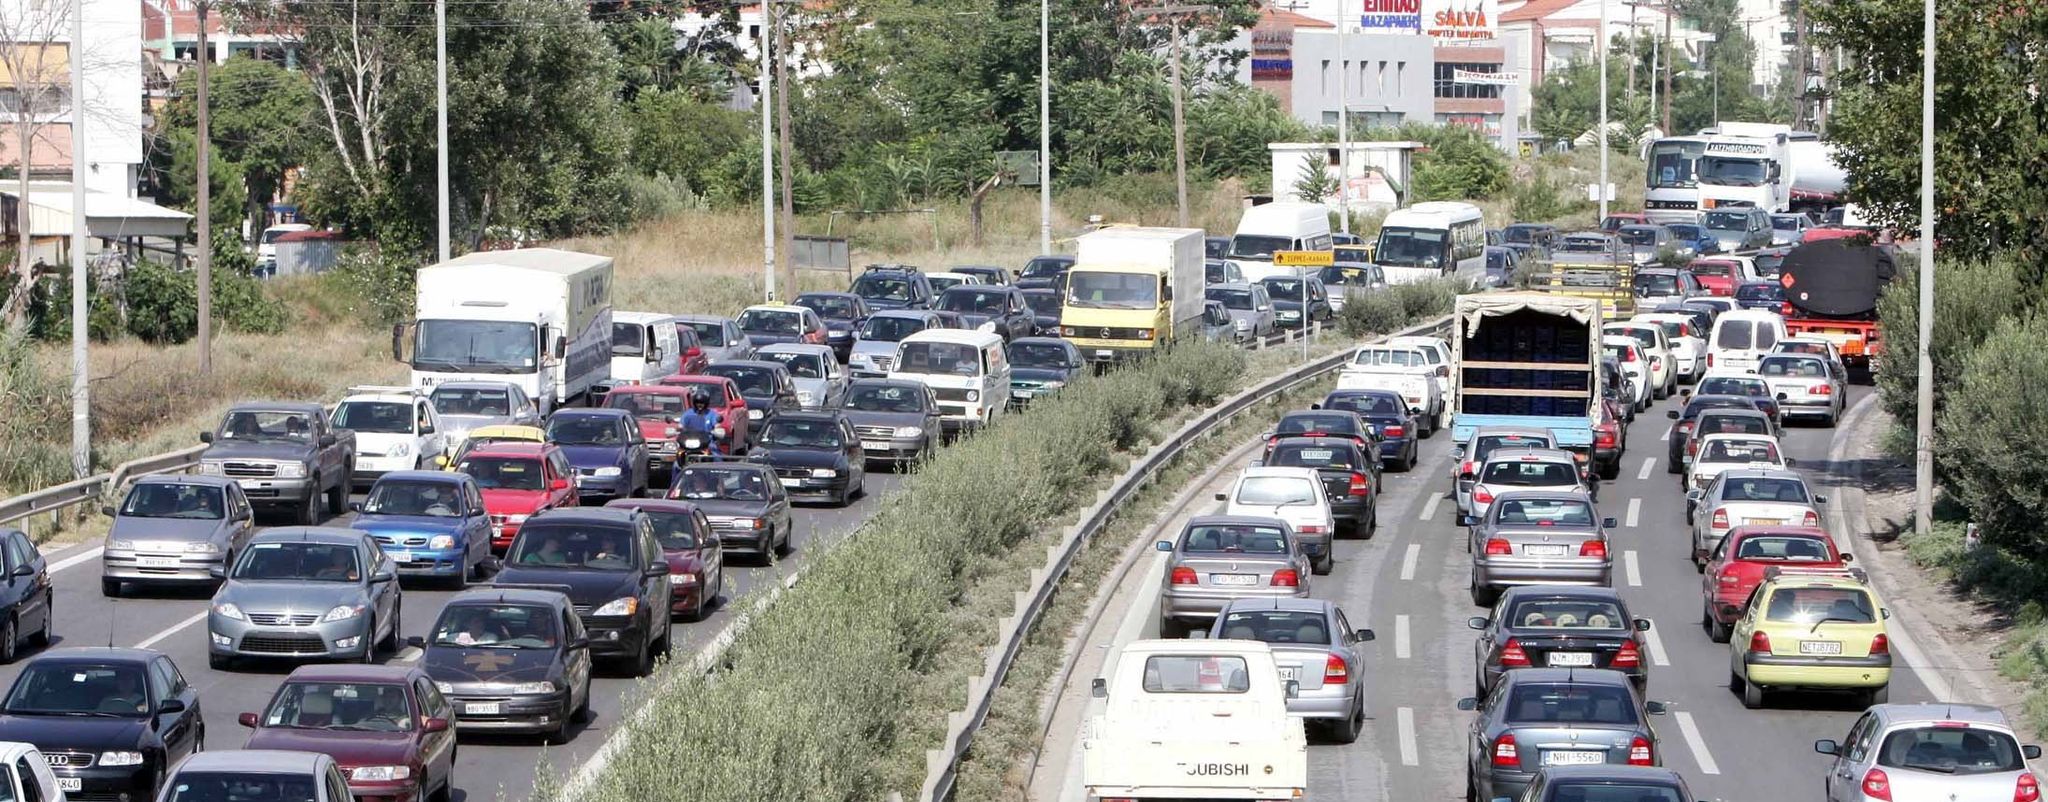 Θεσσαλονίκη: Μποτιλιάρισμα στην Περιφερειακή οδό λόγω σύγκρουσης δύο οχημάτων